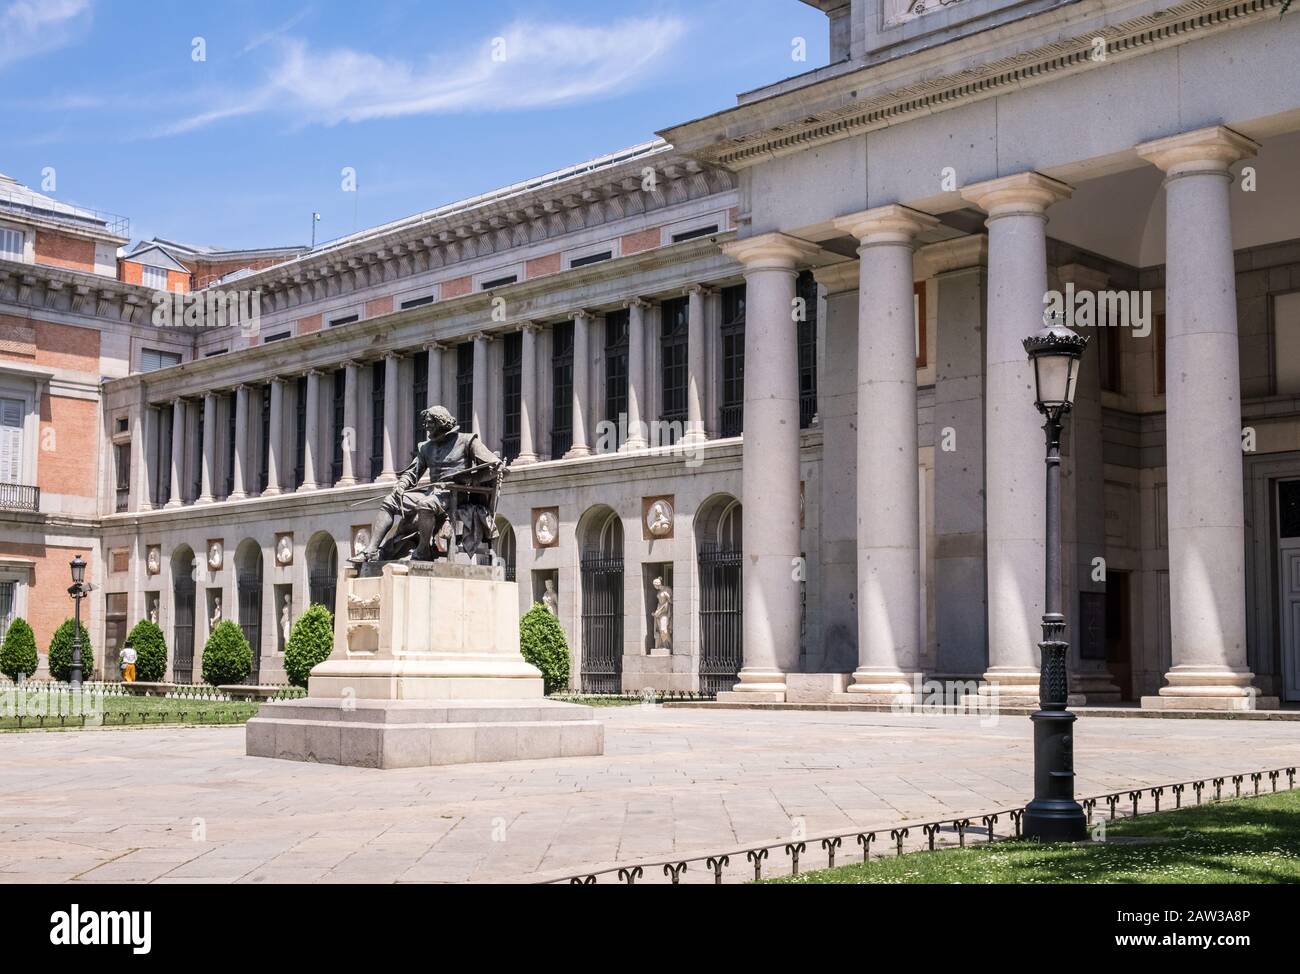 Statue de bronze de Diego Velazquez à l'extérieur du bâtiment du Musée du Prado, Madrid, Espagne Banque D'Images